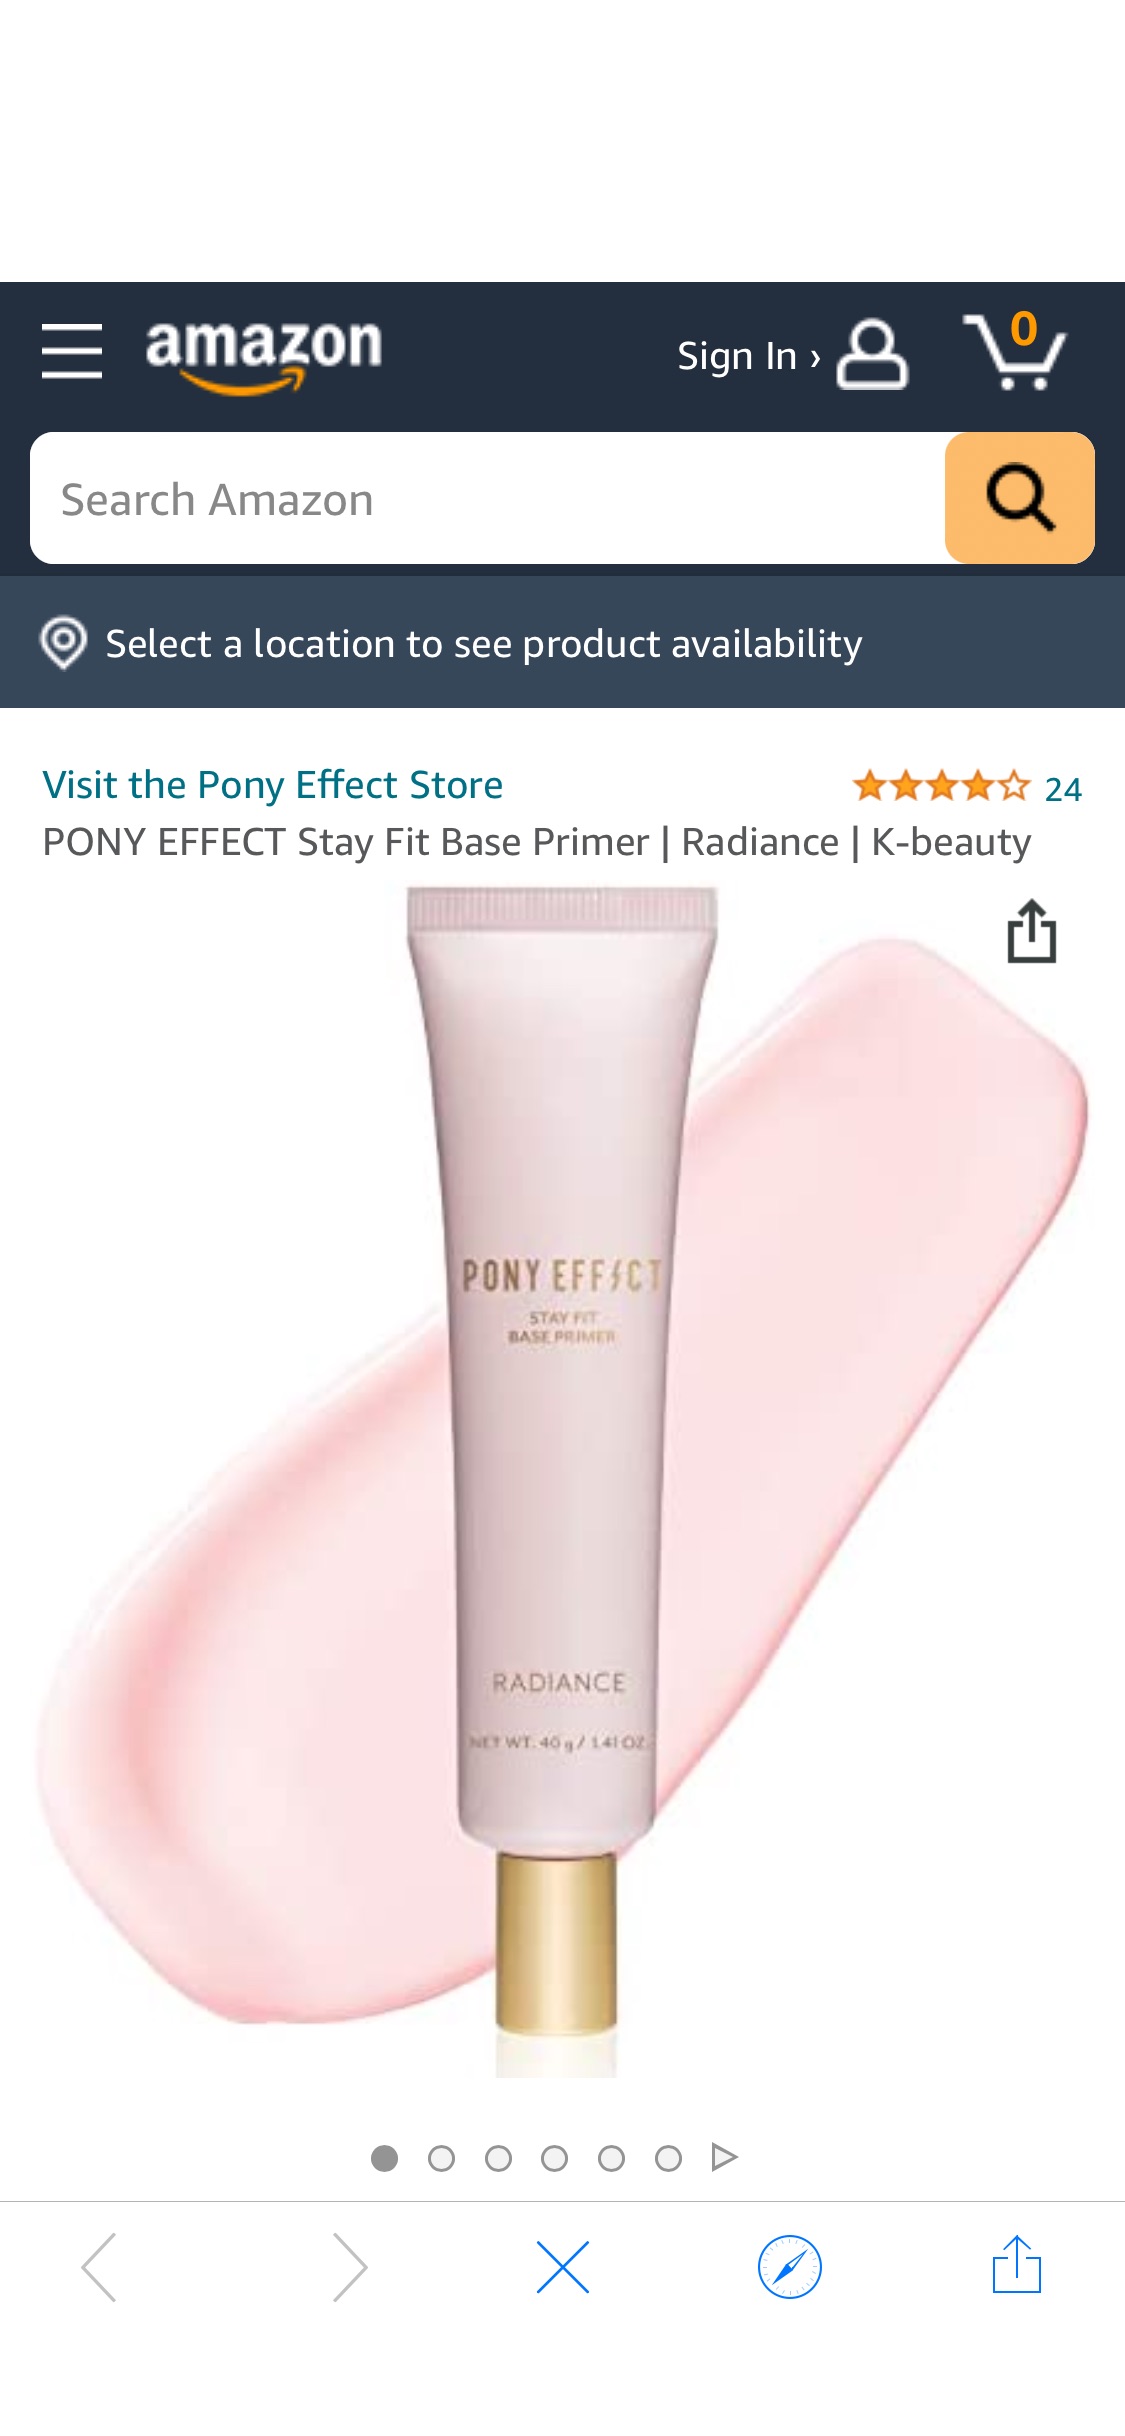 Amazon.com: PONY EFFECT Stay Fit Base Primer | Radiance | K-beauty